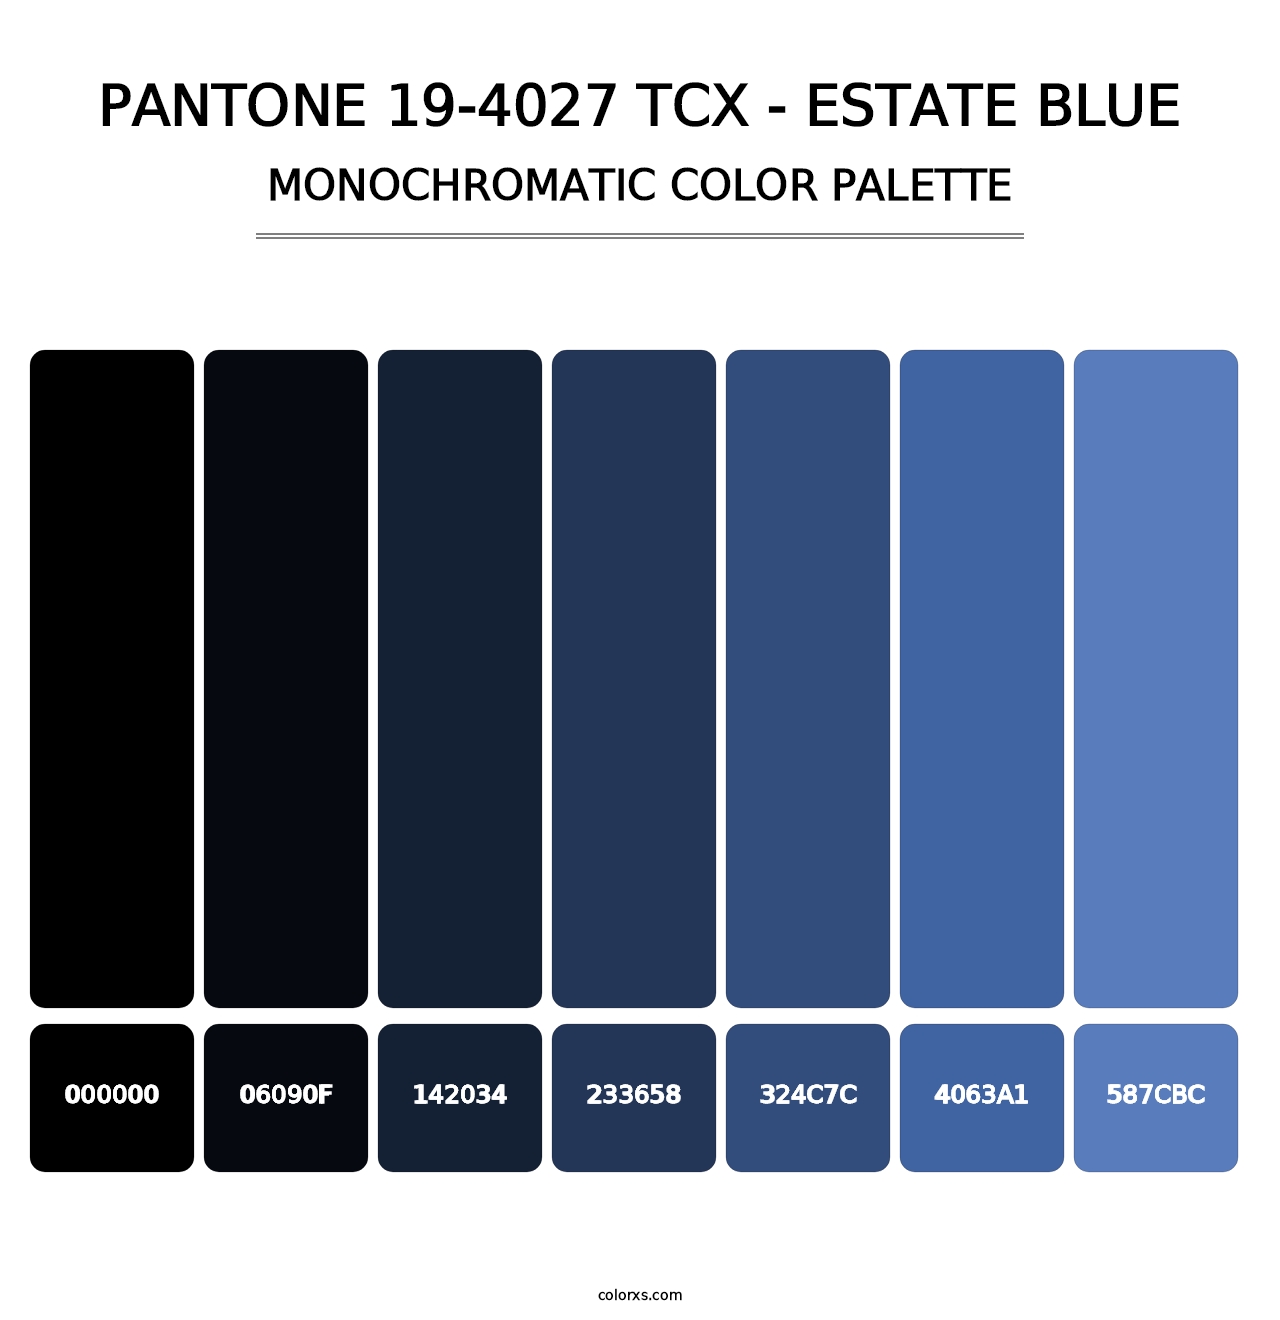 PANTONE 19-4027 TCX - Estate Blue - Monochromatic Color Palette